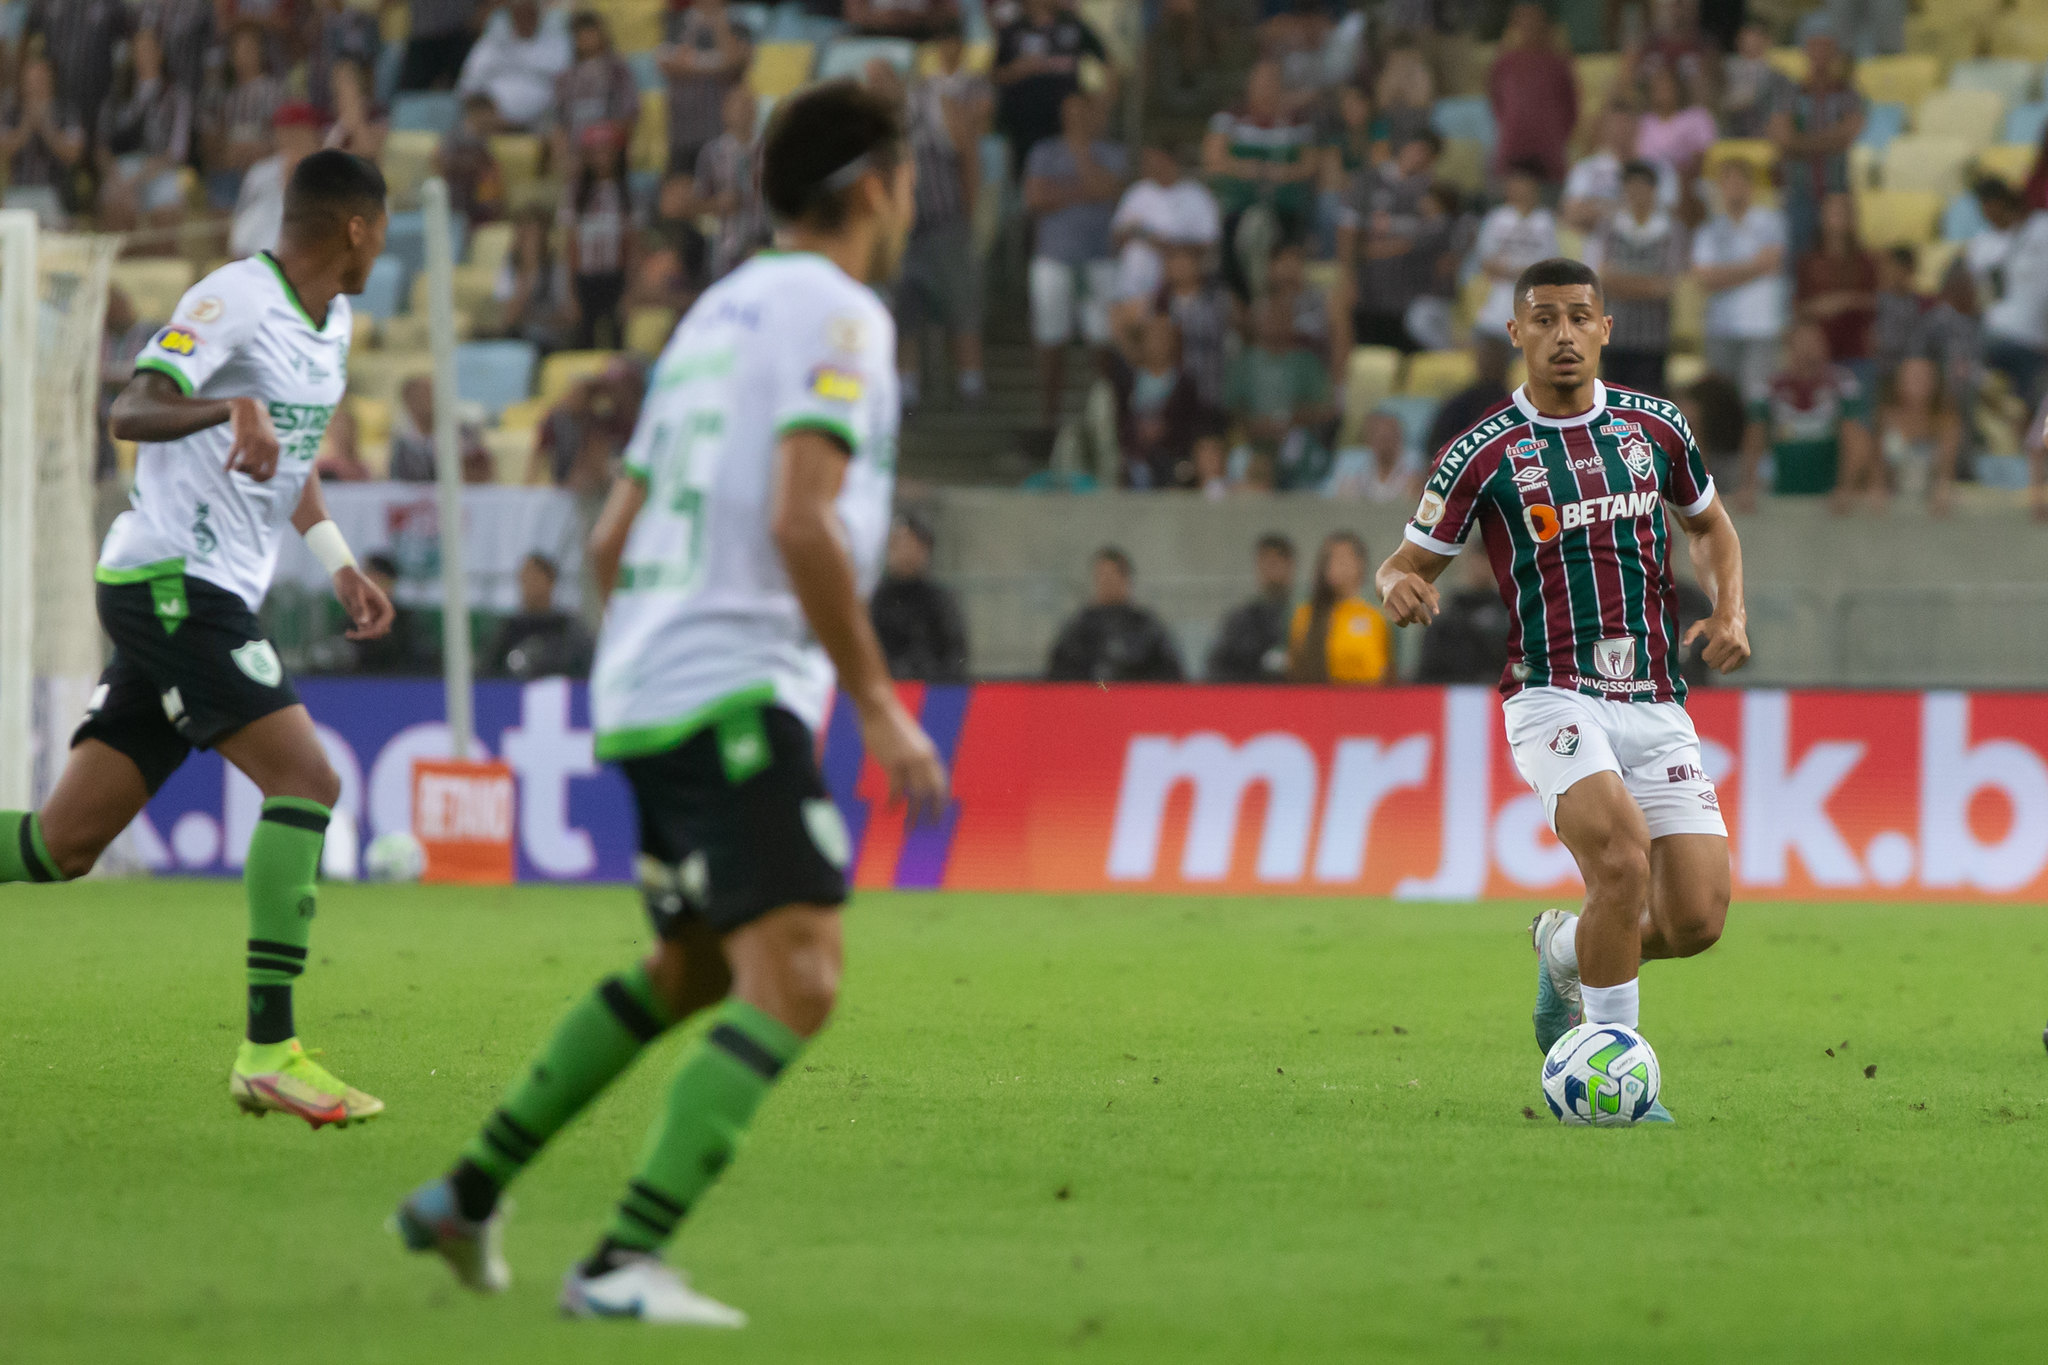 FOTO: MARCELO GONÇALVES / FLUMINENSE FC